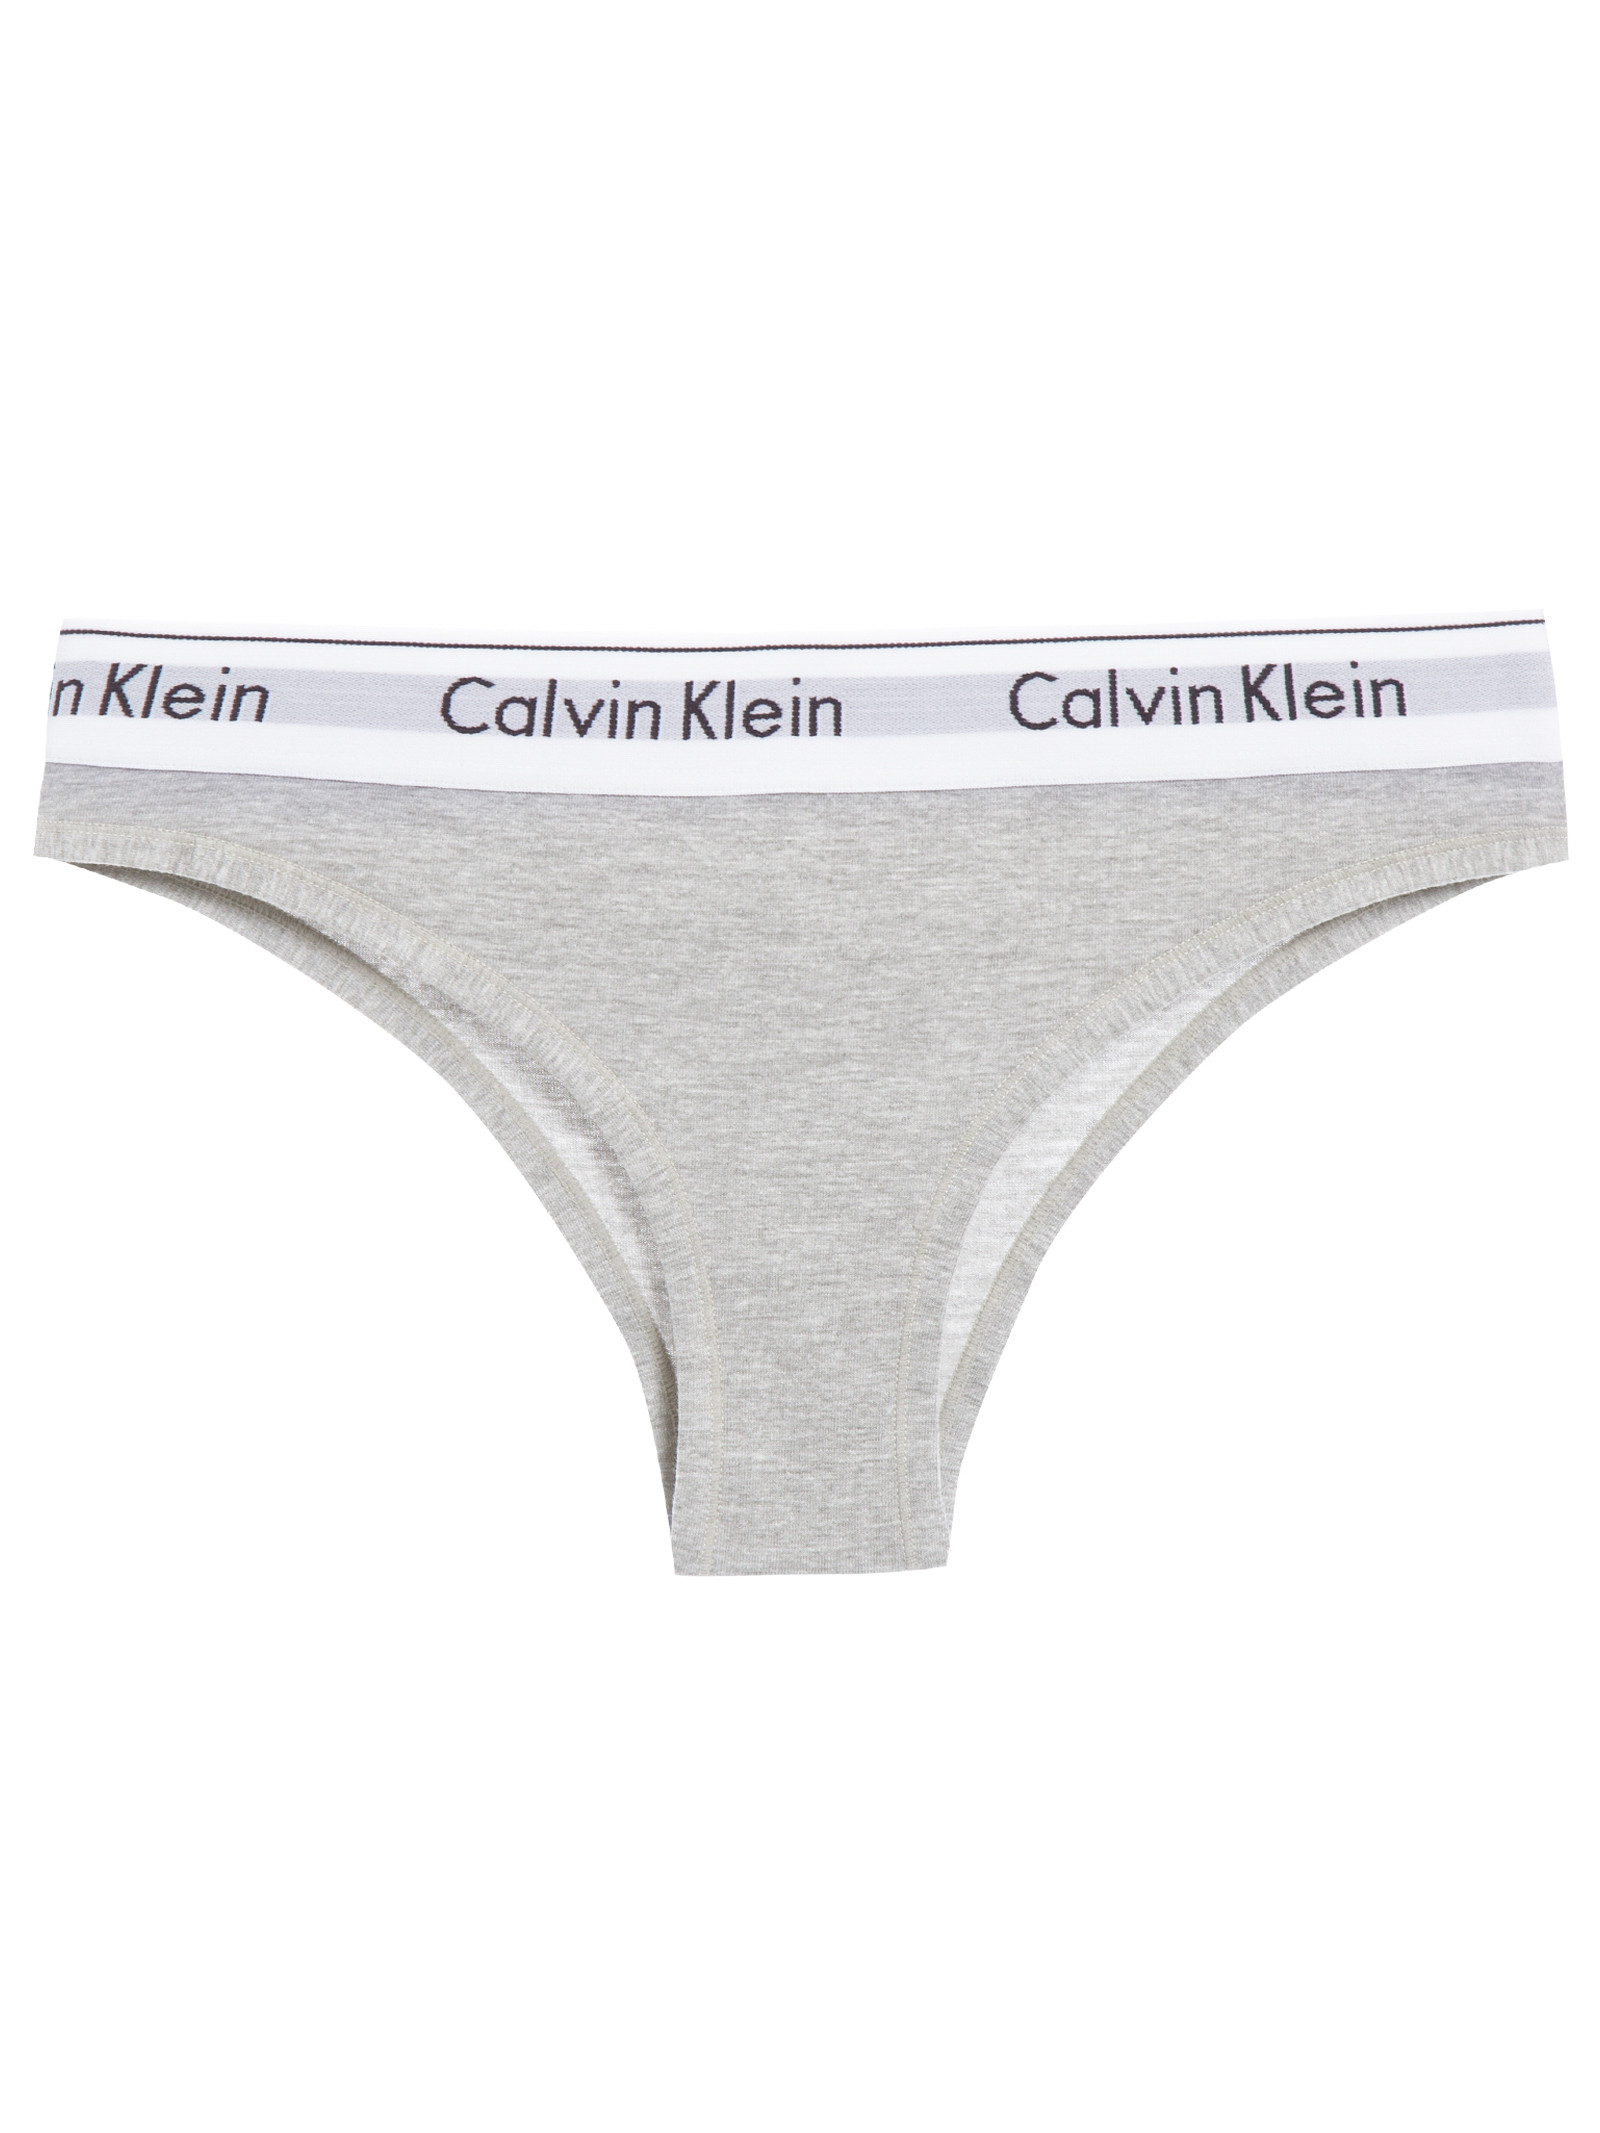 Calcinha tanga feminina moderna de algodão Calvin Klein, Branco, X